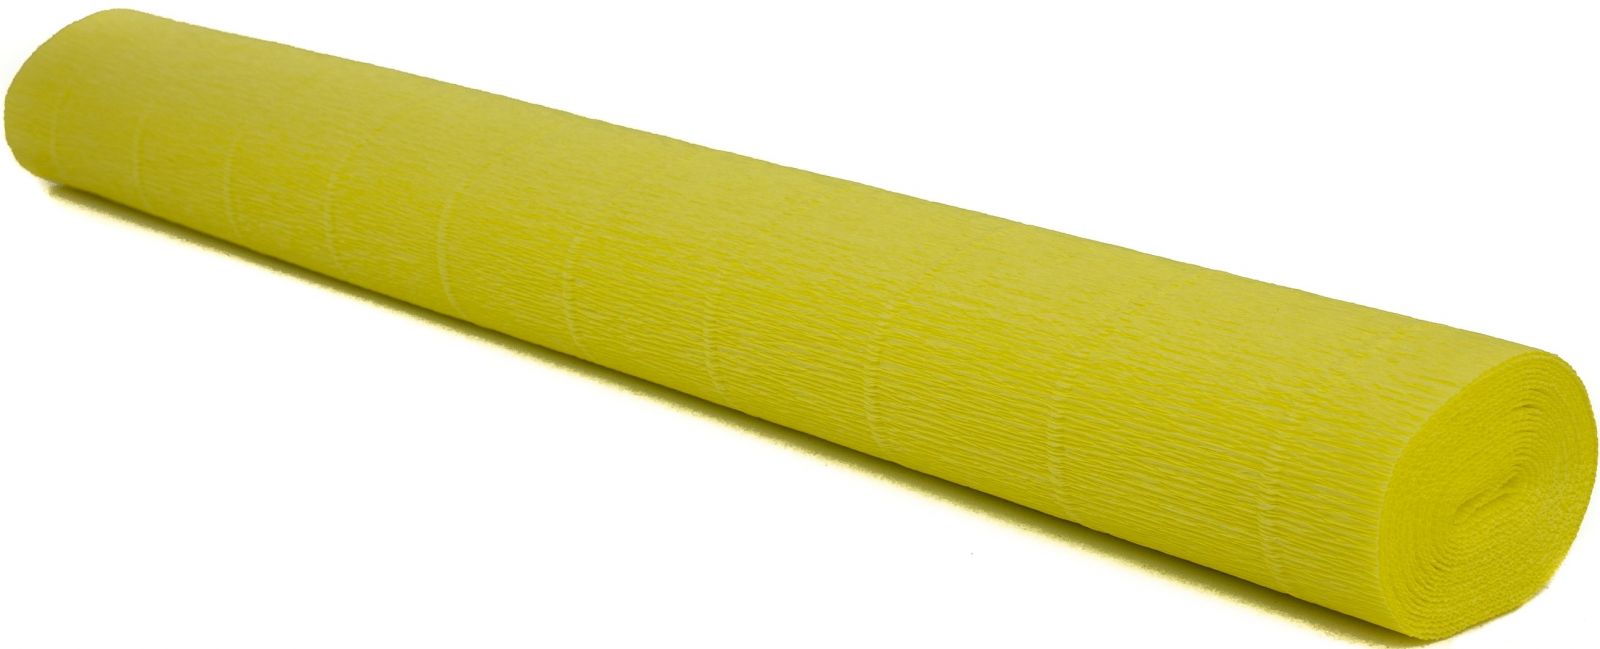 Krepový papír EXTRA pevný 180g, 50x200cm - k výrobě květů a jiné dekorace - Citronová žlutá